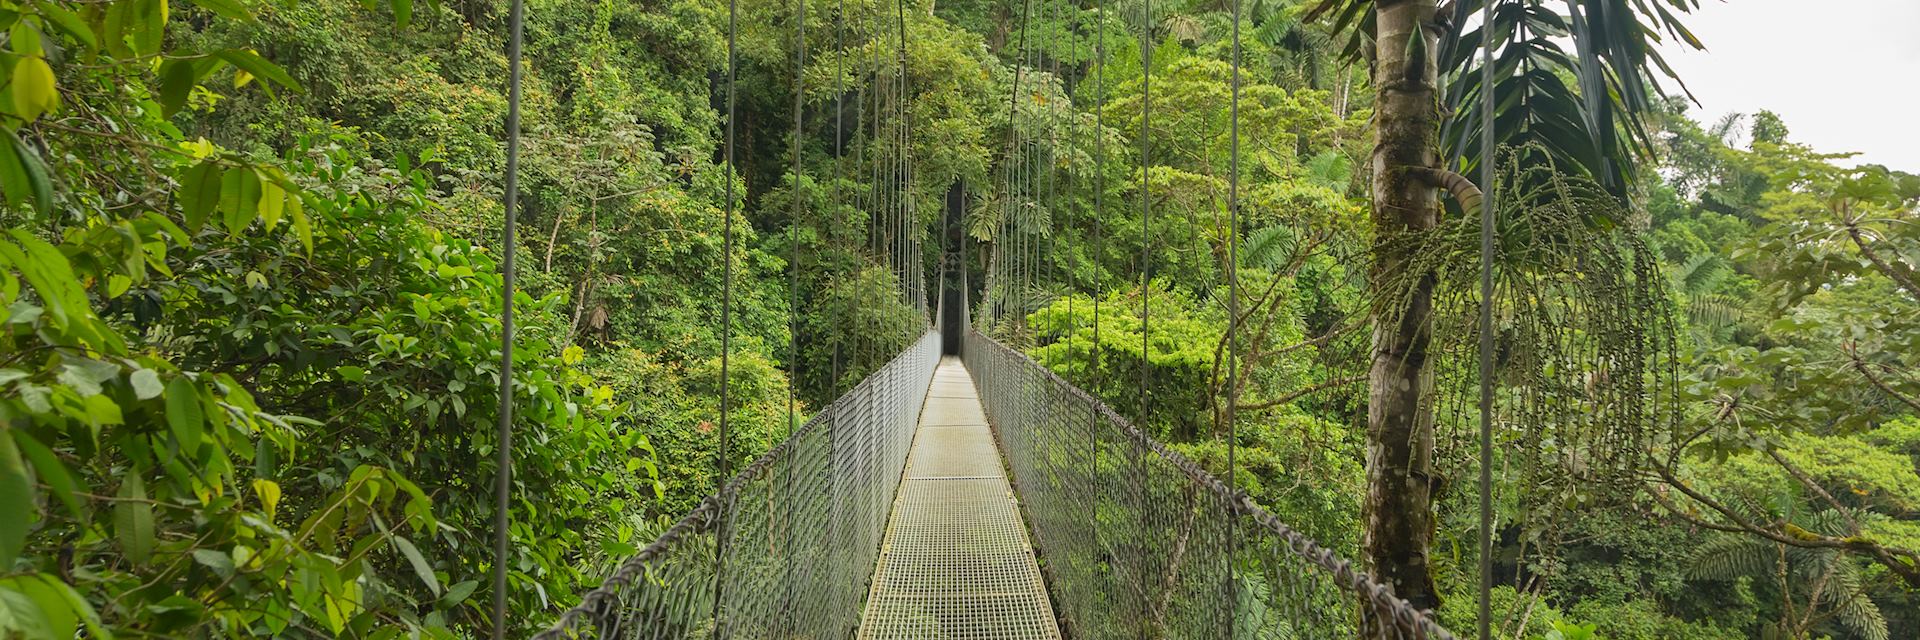 Cloud Forest bridge, Costa Rica